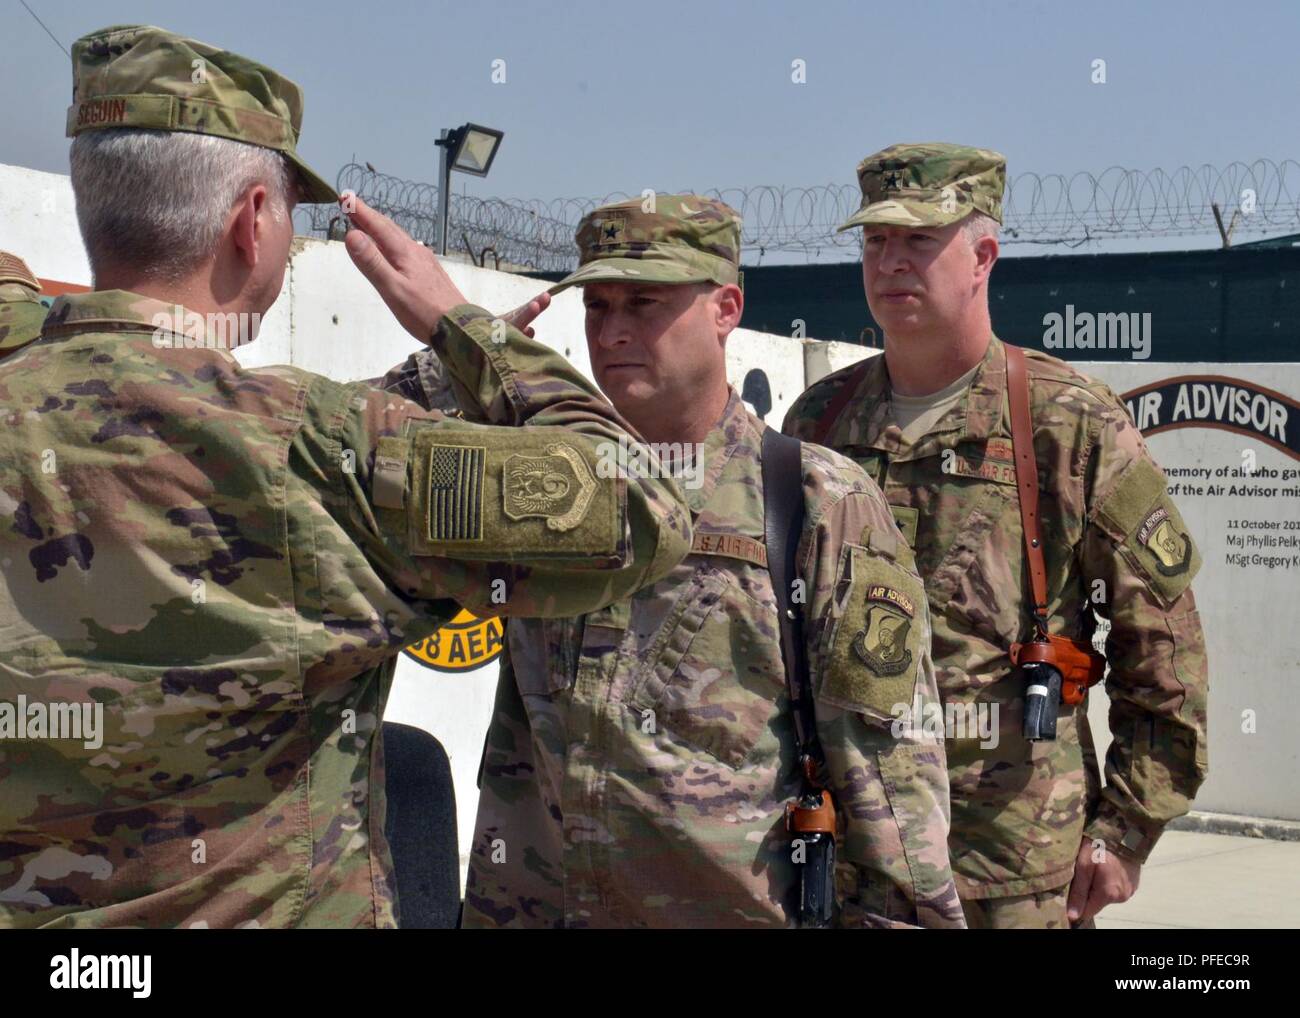 KABUL, Afganistán (4 de junio del 2016) - La Fuerza Aérea de los EE.UU Brig. Gen. Phillip Stewart, capacitar, asesorar y ayudar Command-Air y 438th Air Expeditionary Wing commander, rinde un último homenaje a la Fuerza Aérea de los EE.UU Gen. Gral Barre Seguin, el Comando Aéreo de la OTAN de Afganistán y 9ª tarea expedicionaria aérea y espacial Force-Afghanistan comandante, antes de ceder el mando el 4 de junio de 2018, en Kabul, Afganistán. Stewart dejó el mando de la Fuerza Aérea de Estados Unidos Brig. Gen. Joel Carey, entrantes, asesorar, capacitar y ayudar Command-Air y 438th Air Expeditionary Wing Commander. Foto de stock